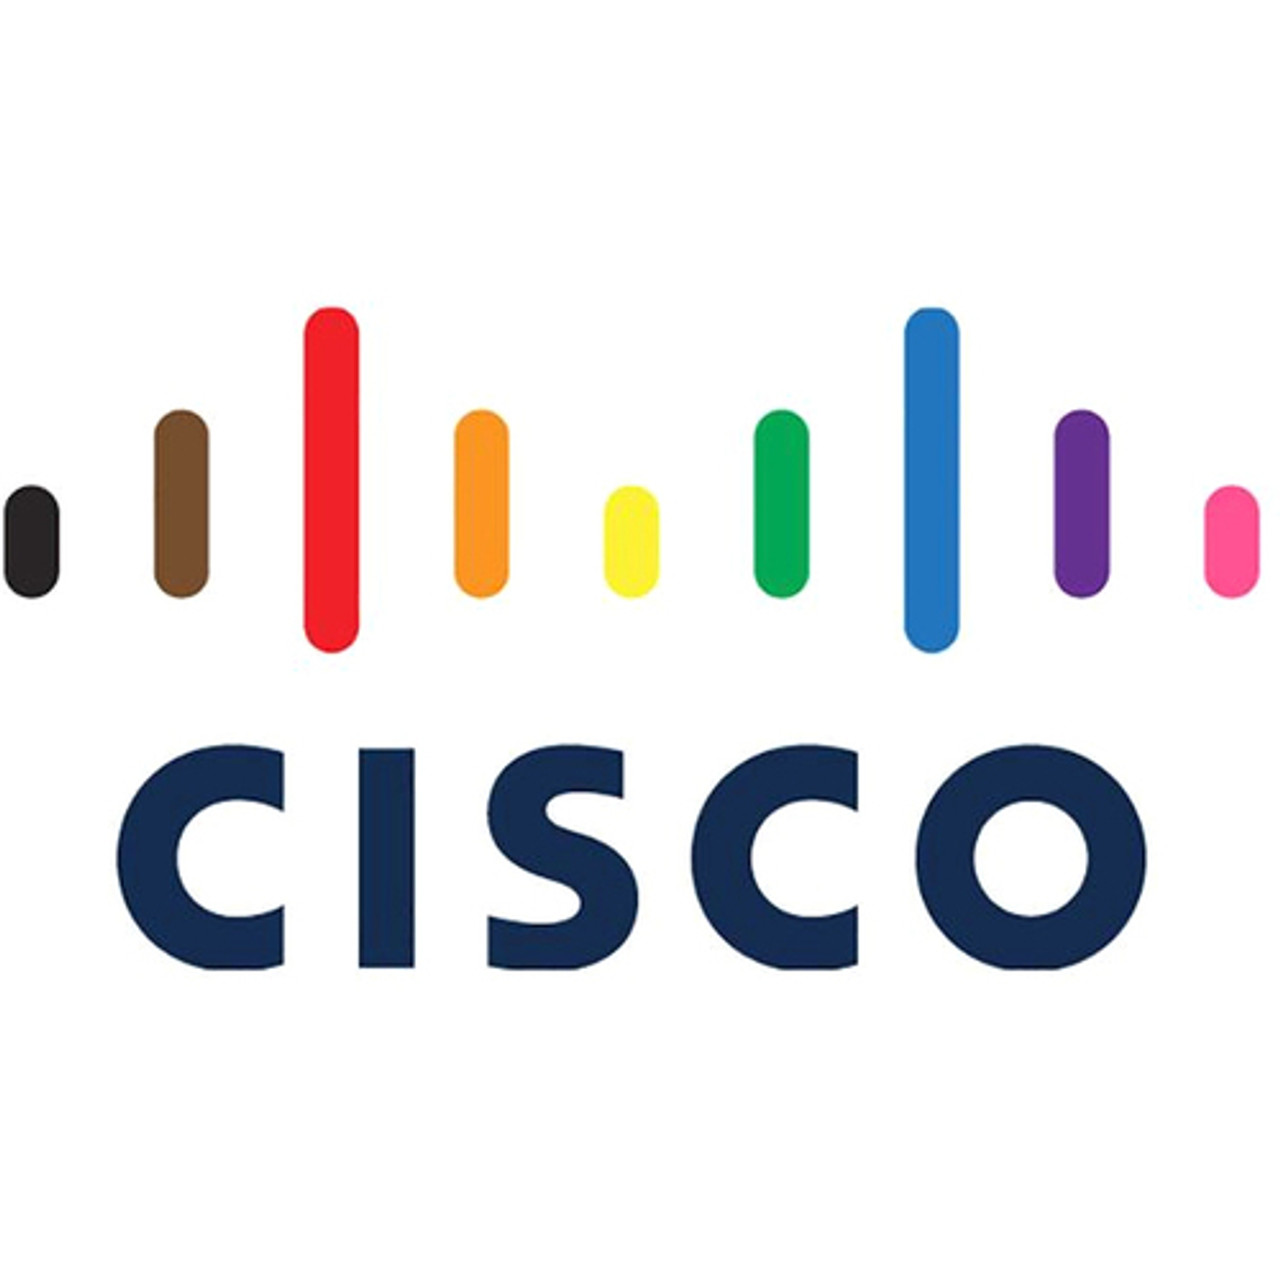 Cisco 1.60 TB Solid State Drive - 2.5" Internal - U.2 (SFF-8639) NVMe